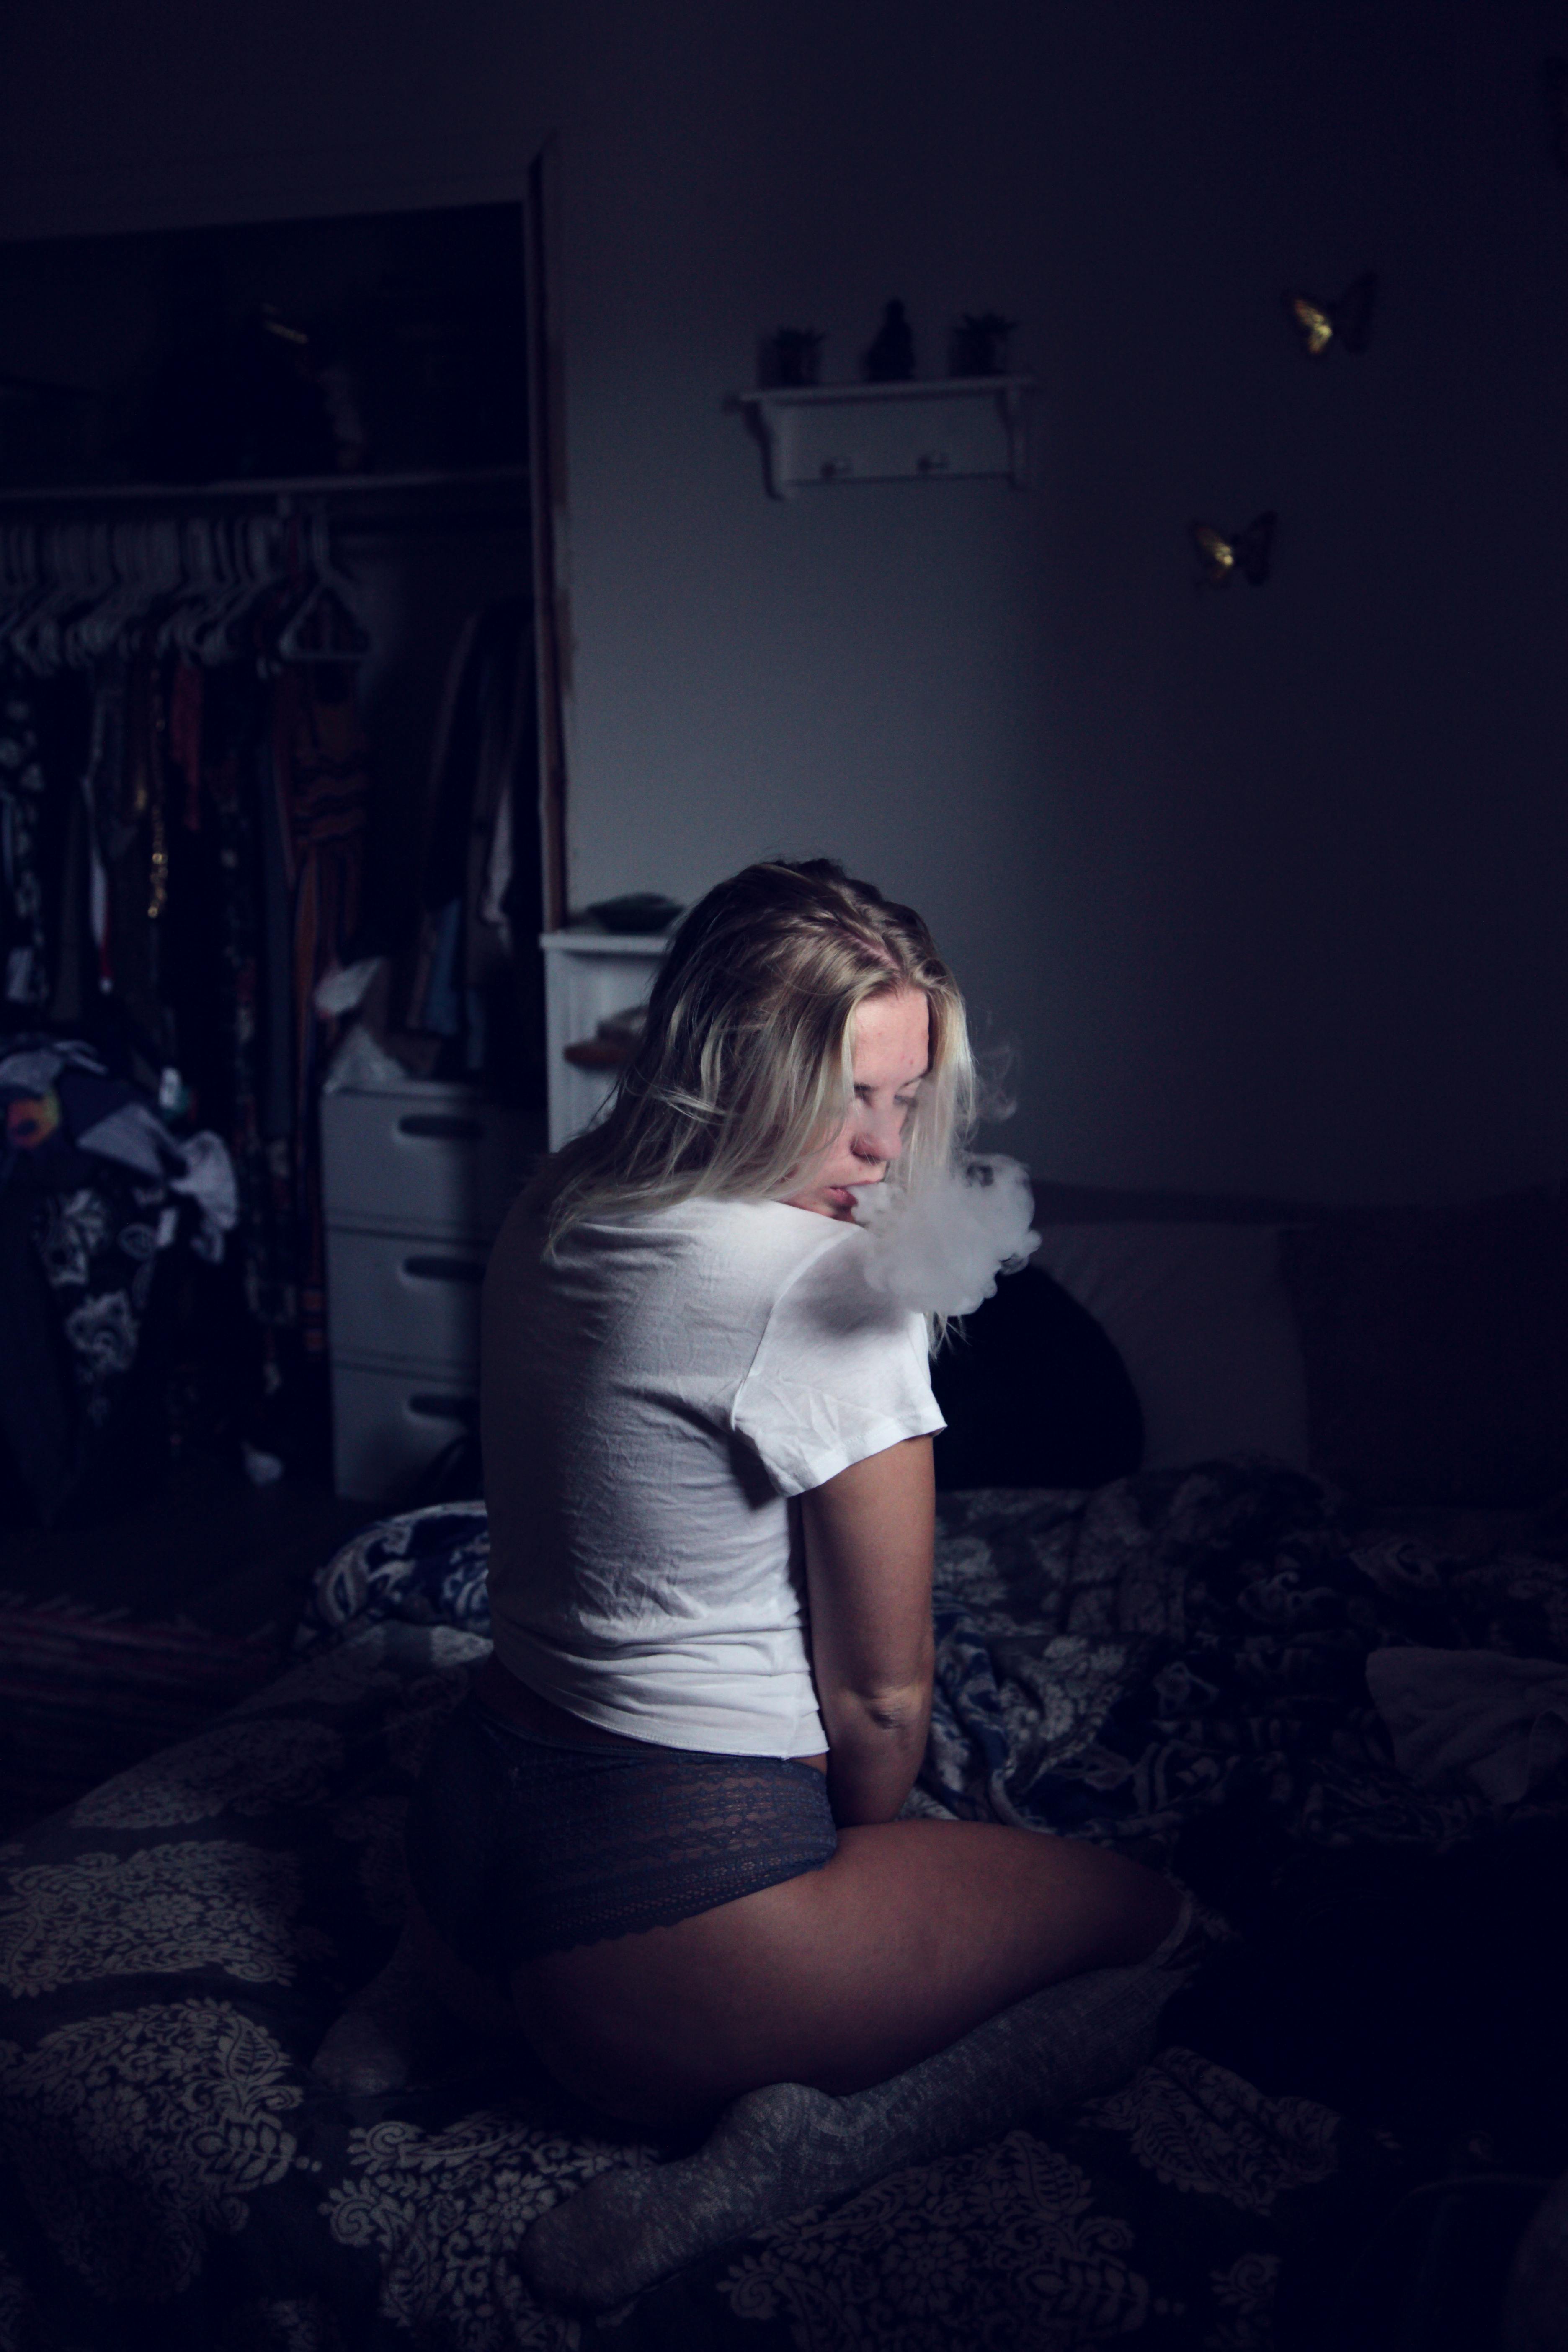 Woman Wearing White Shirt Sitting on Sofa and Smoking